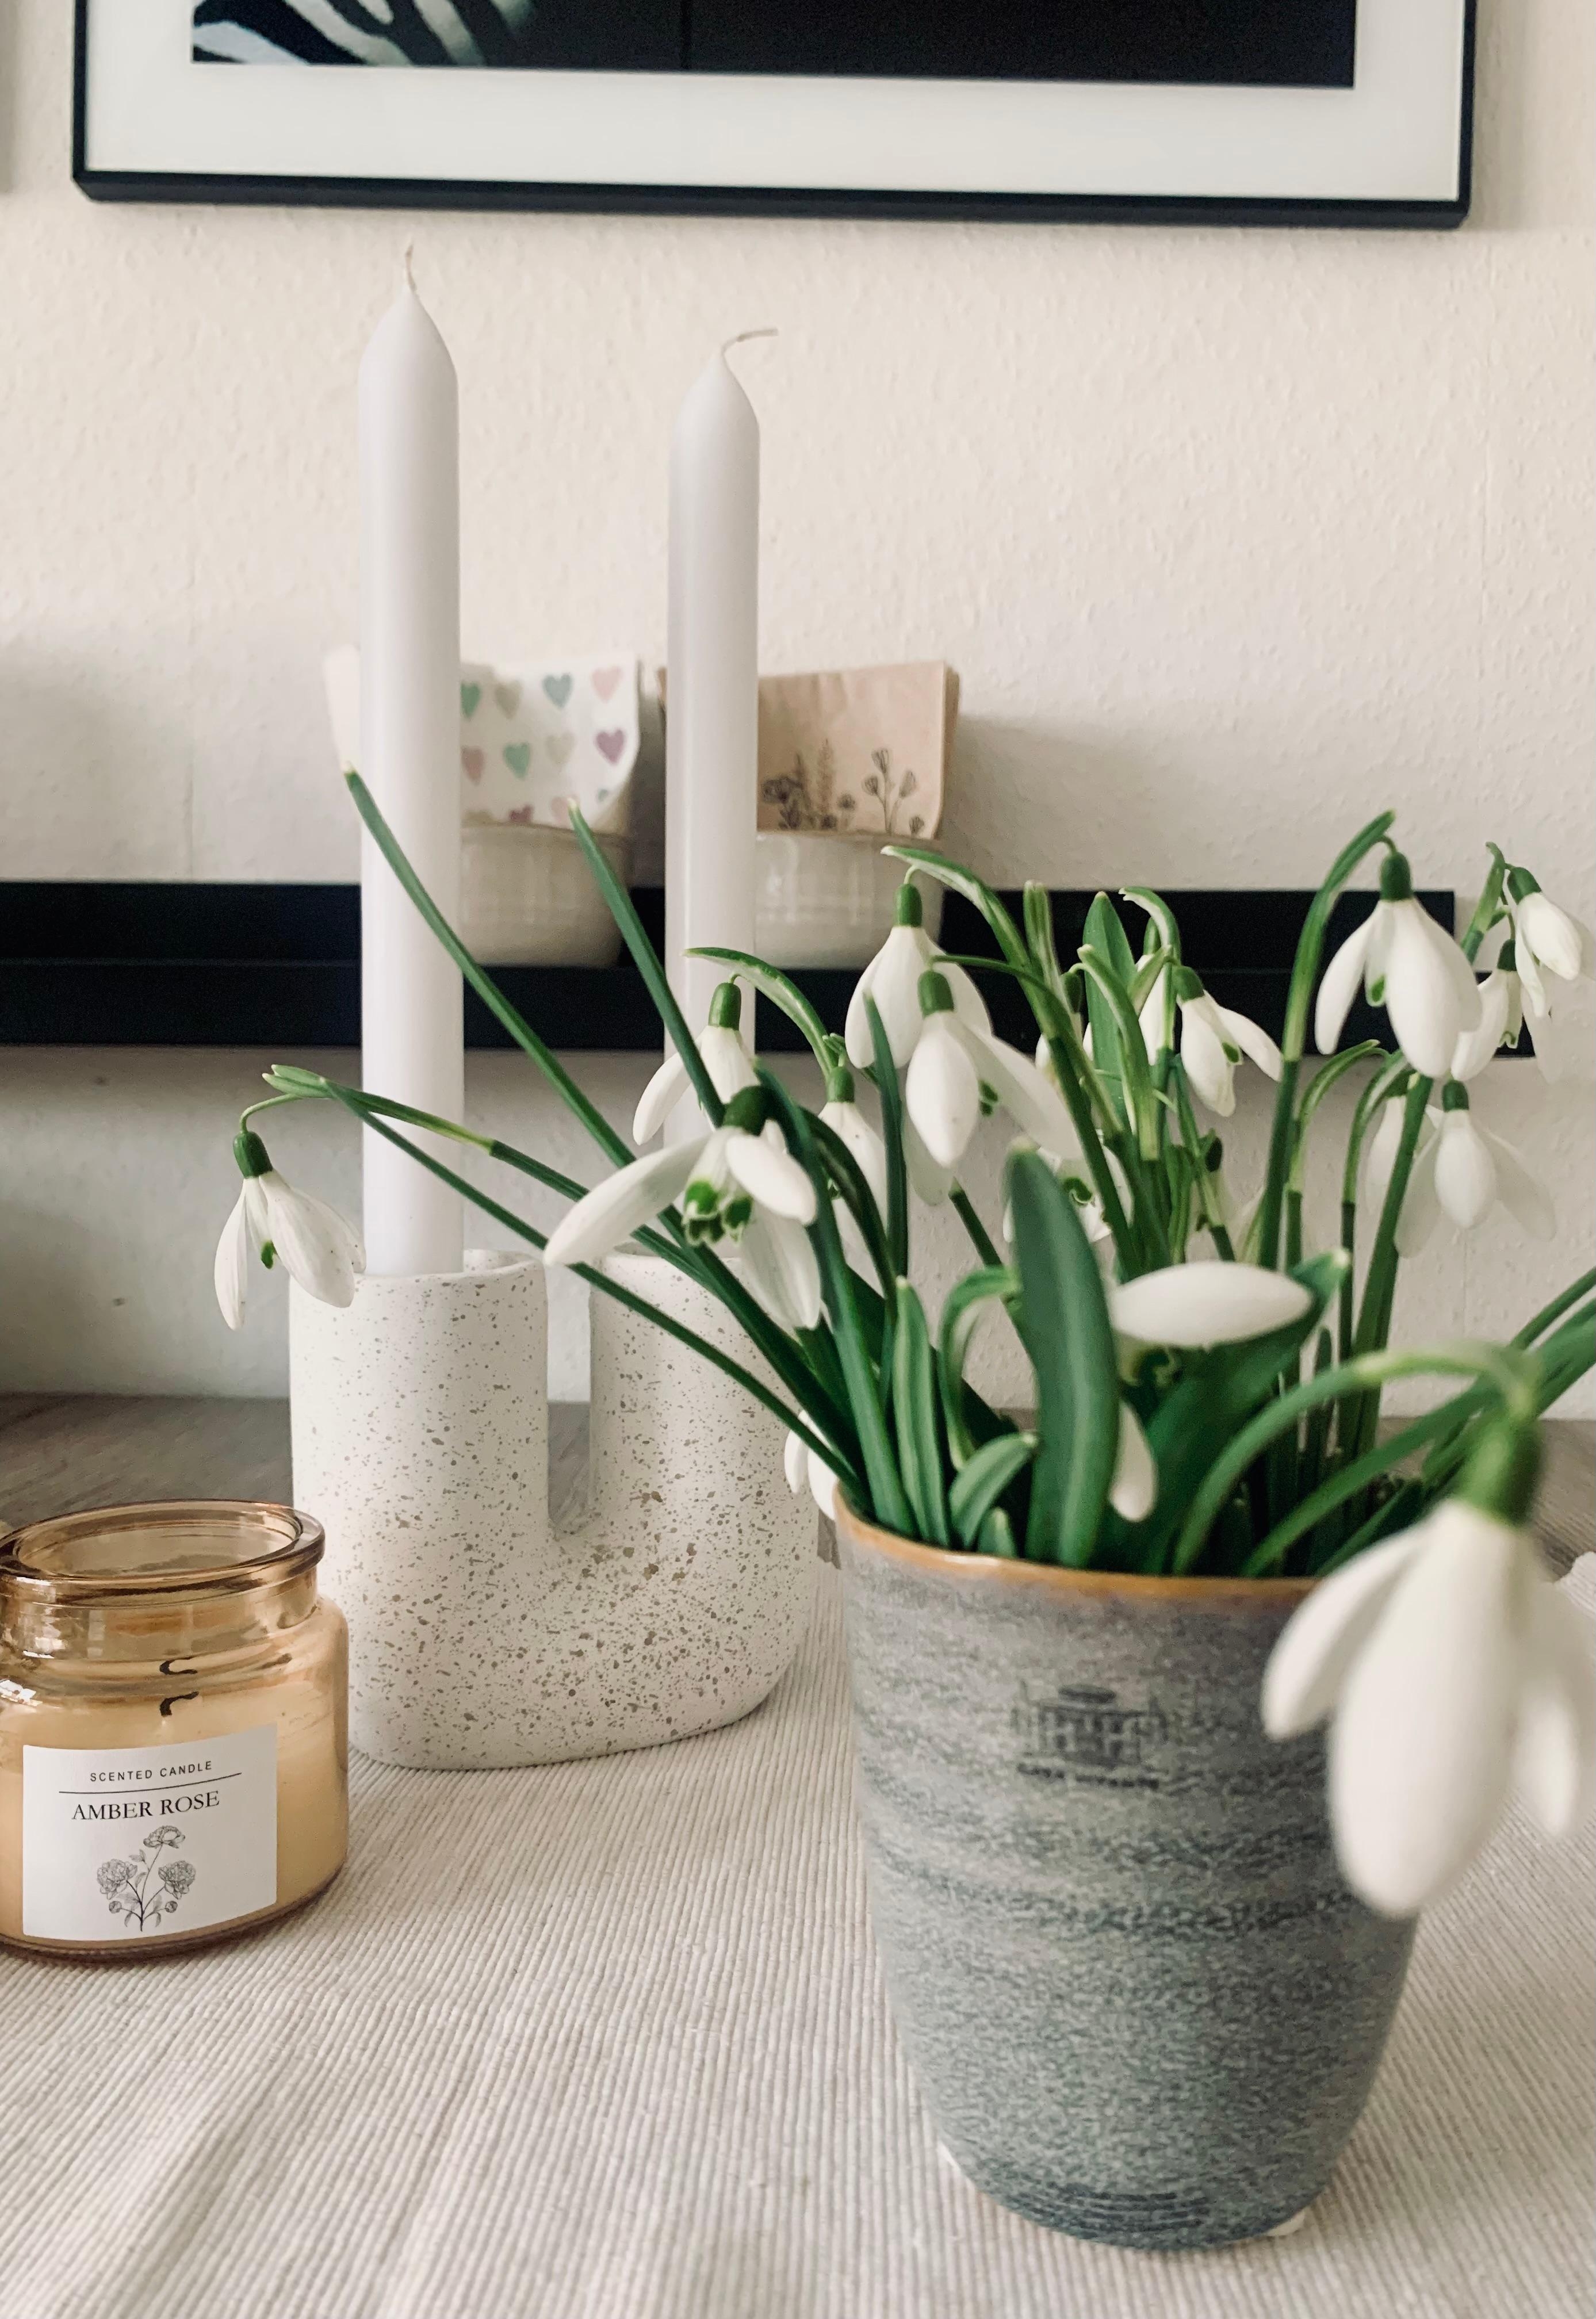 Happy Sunday Schneeglöckchen 🤍

#flower #schneeglöckchen #kerze #tisch #wandboard #vase #kerzenhalter #white #esstisch 